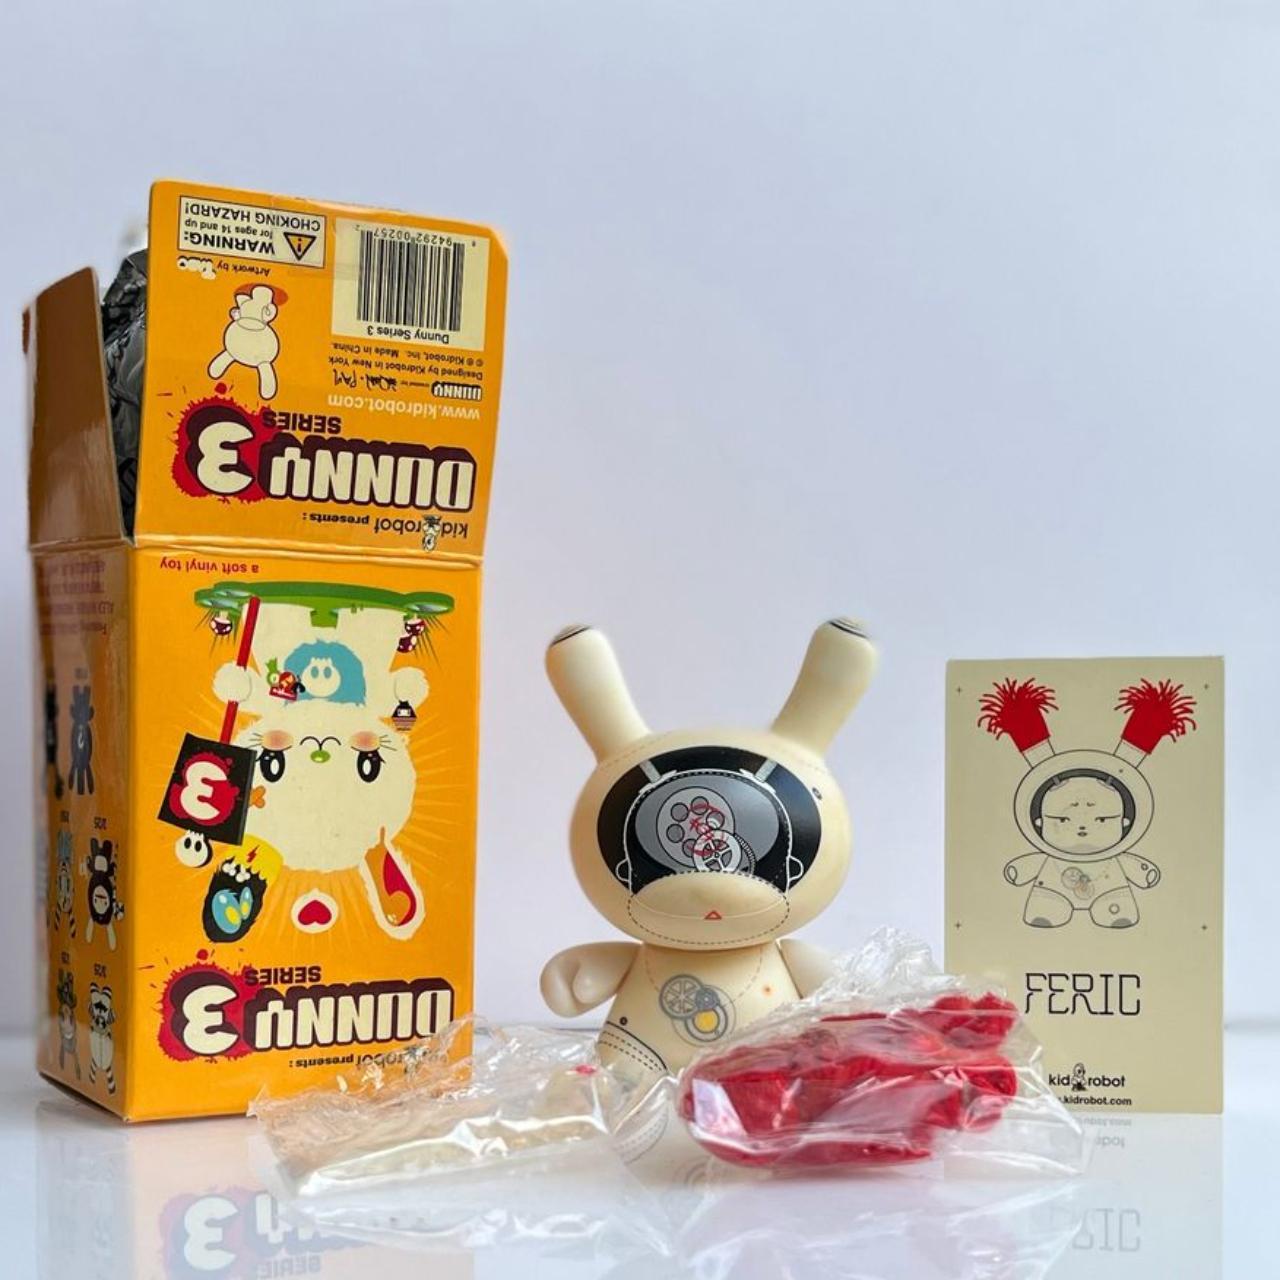 全国宅配無料 Bubblegum kidrobot Dunny figure with Tilt Love Series